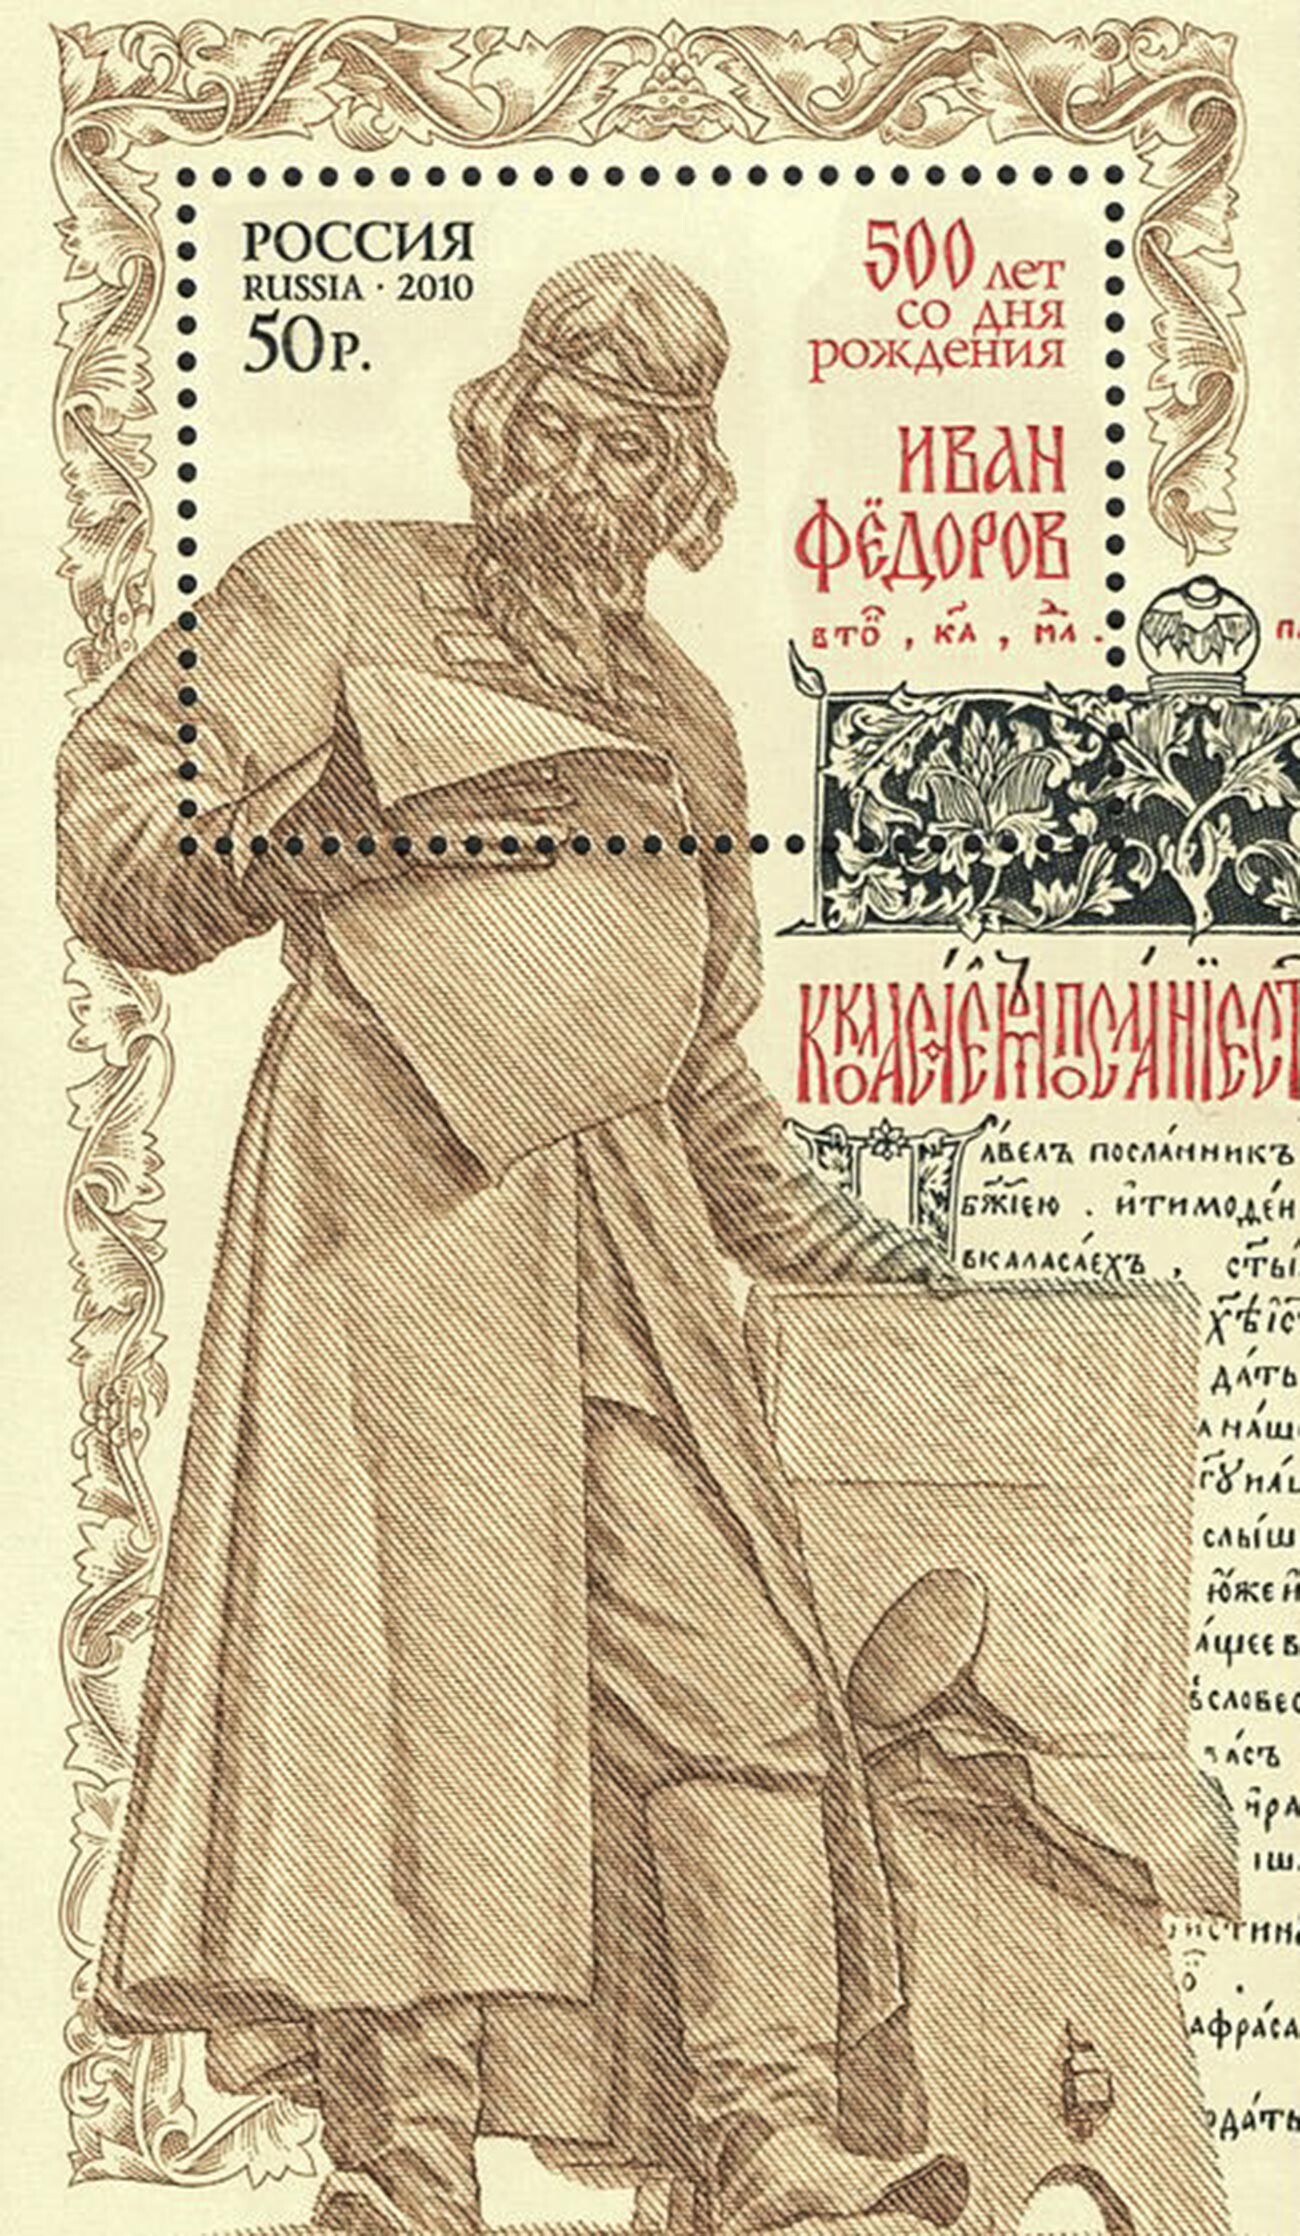 Eine Postkarte zum 500. Jahrestag der angeblichen Geburt von Iwan Fjodorow, 2010.